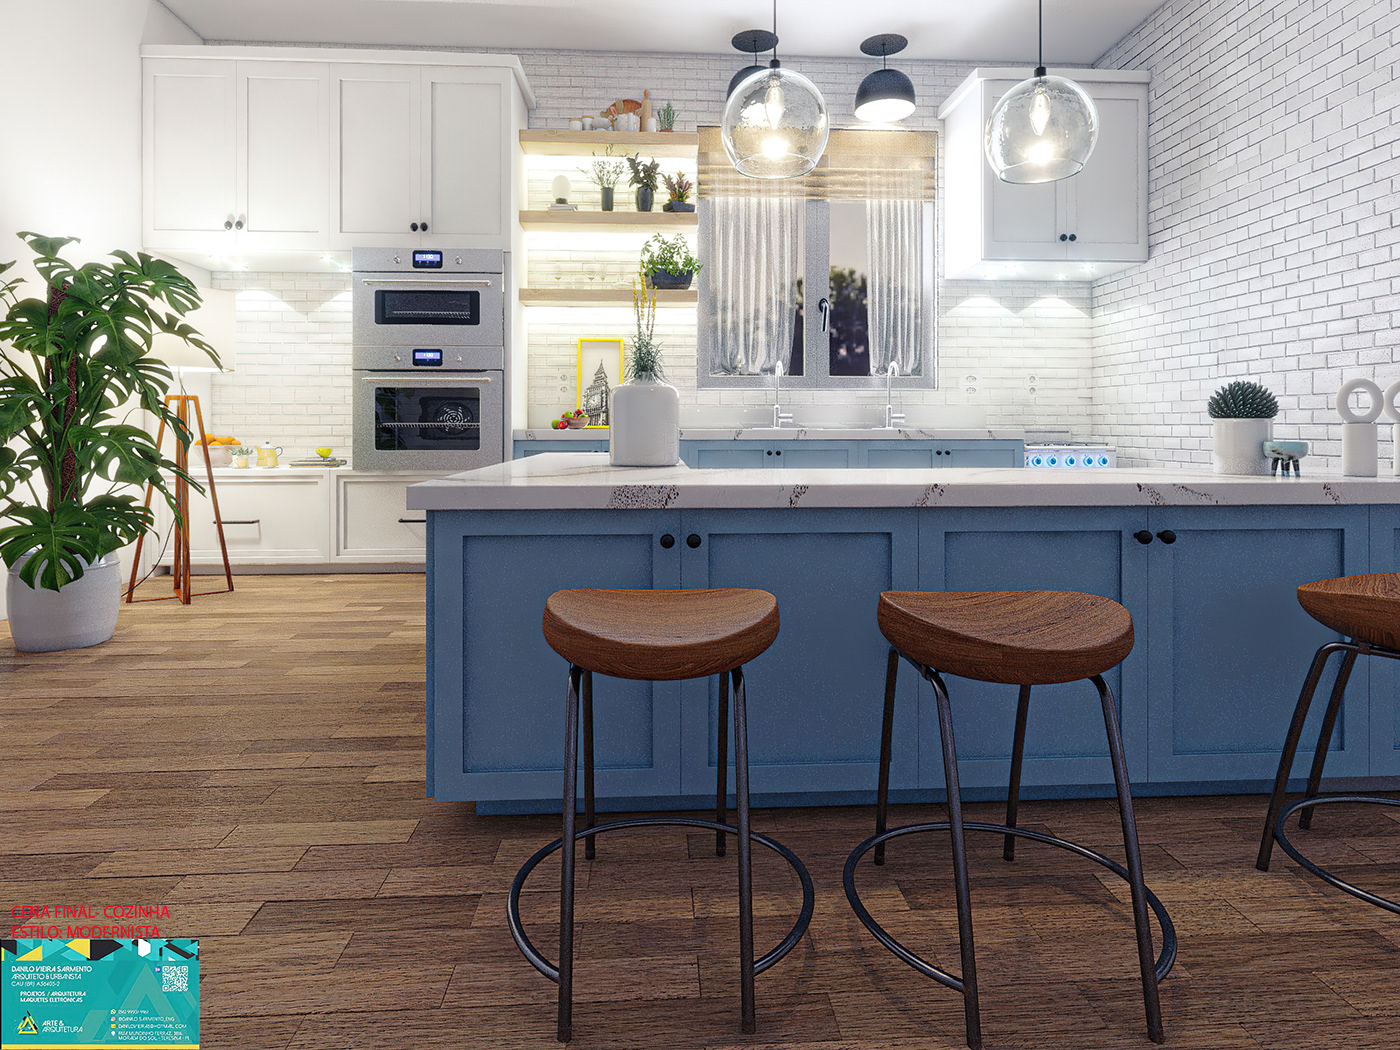 3D archviz arquitectura CGI interior design  kitchen Modern Design Render SketchUP vray